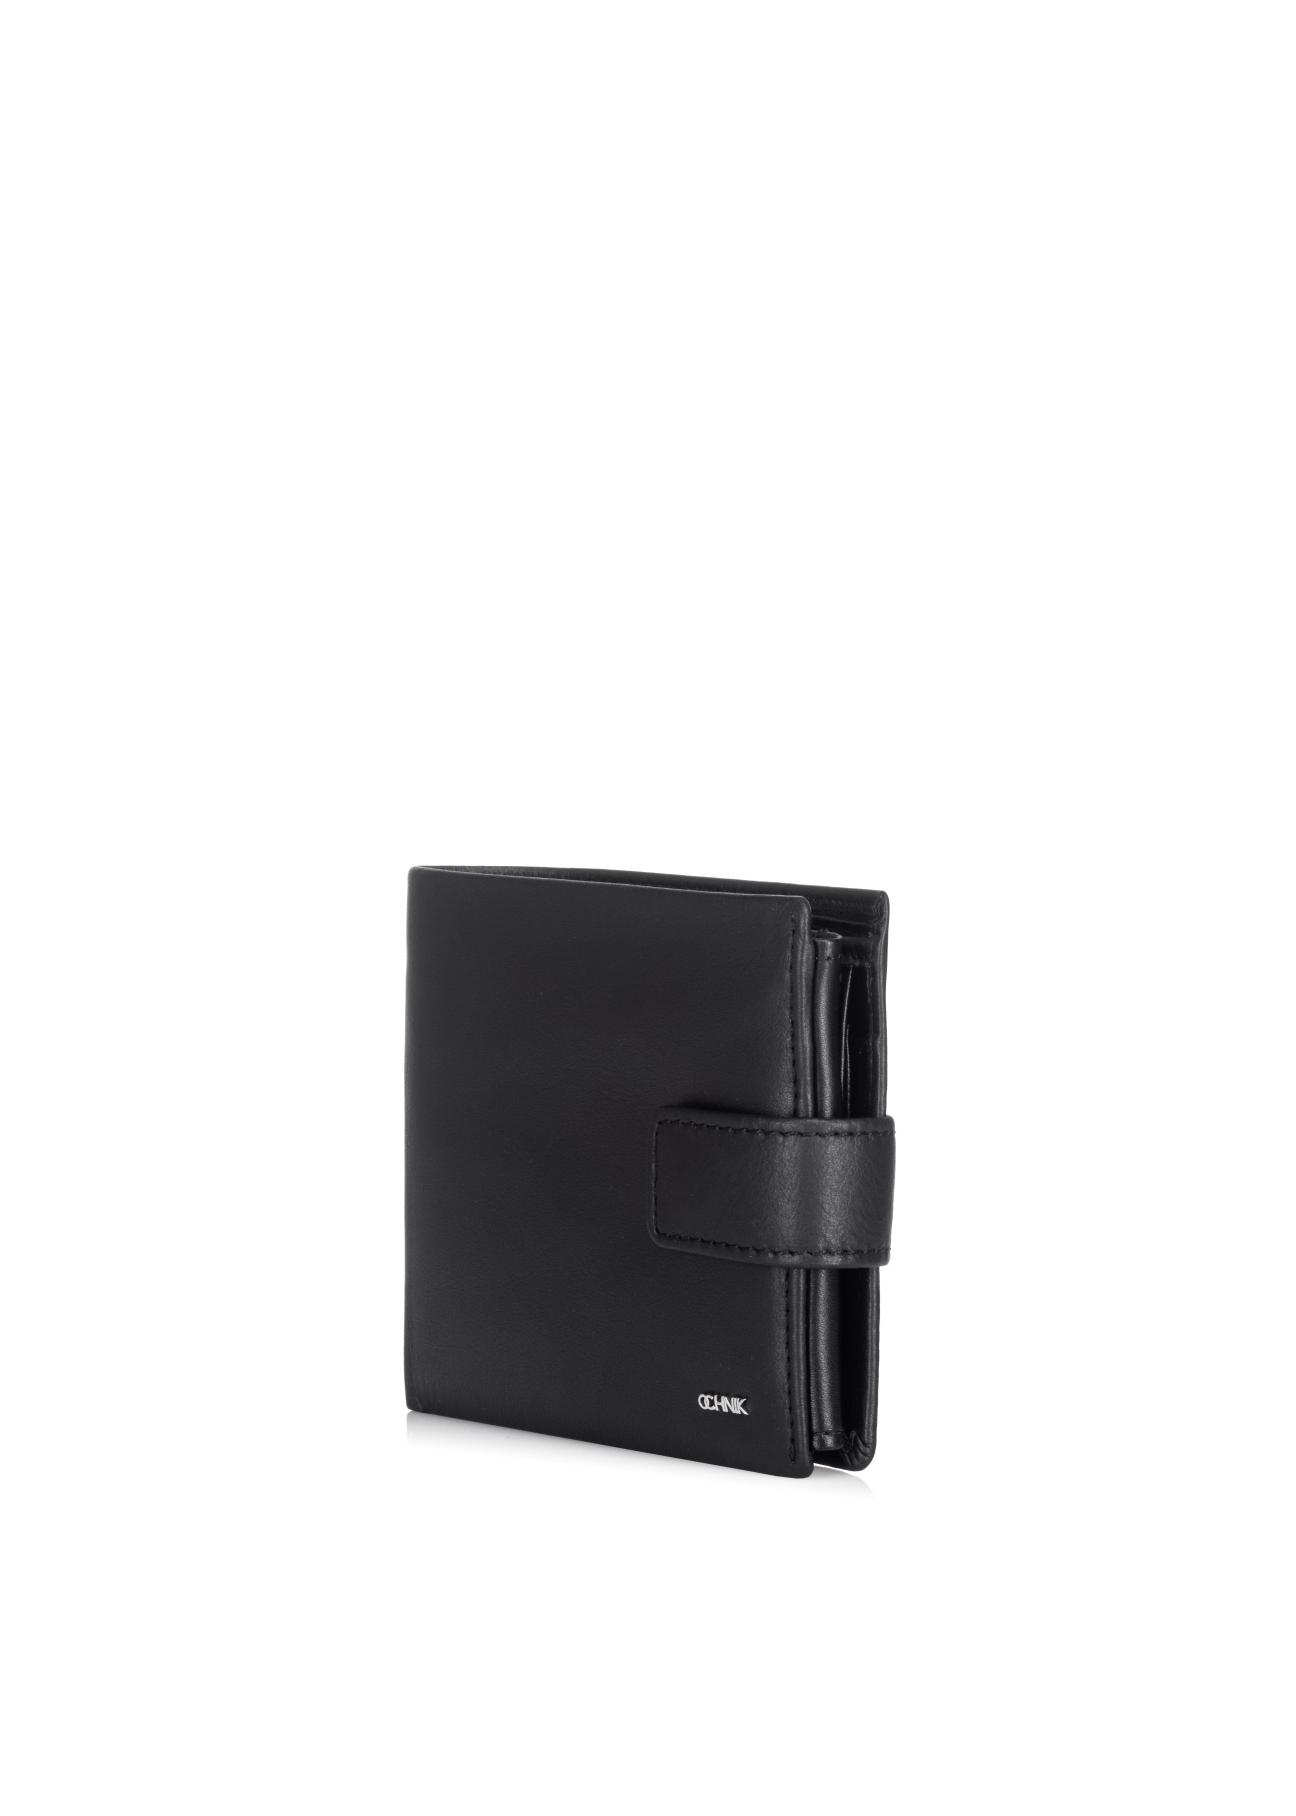 Czarny skórzany portfel męski PORMS-0409A-99(Z23)